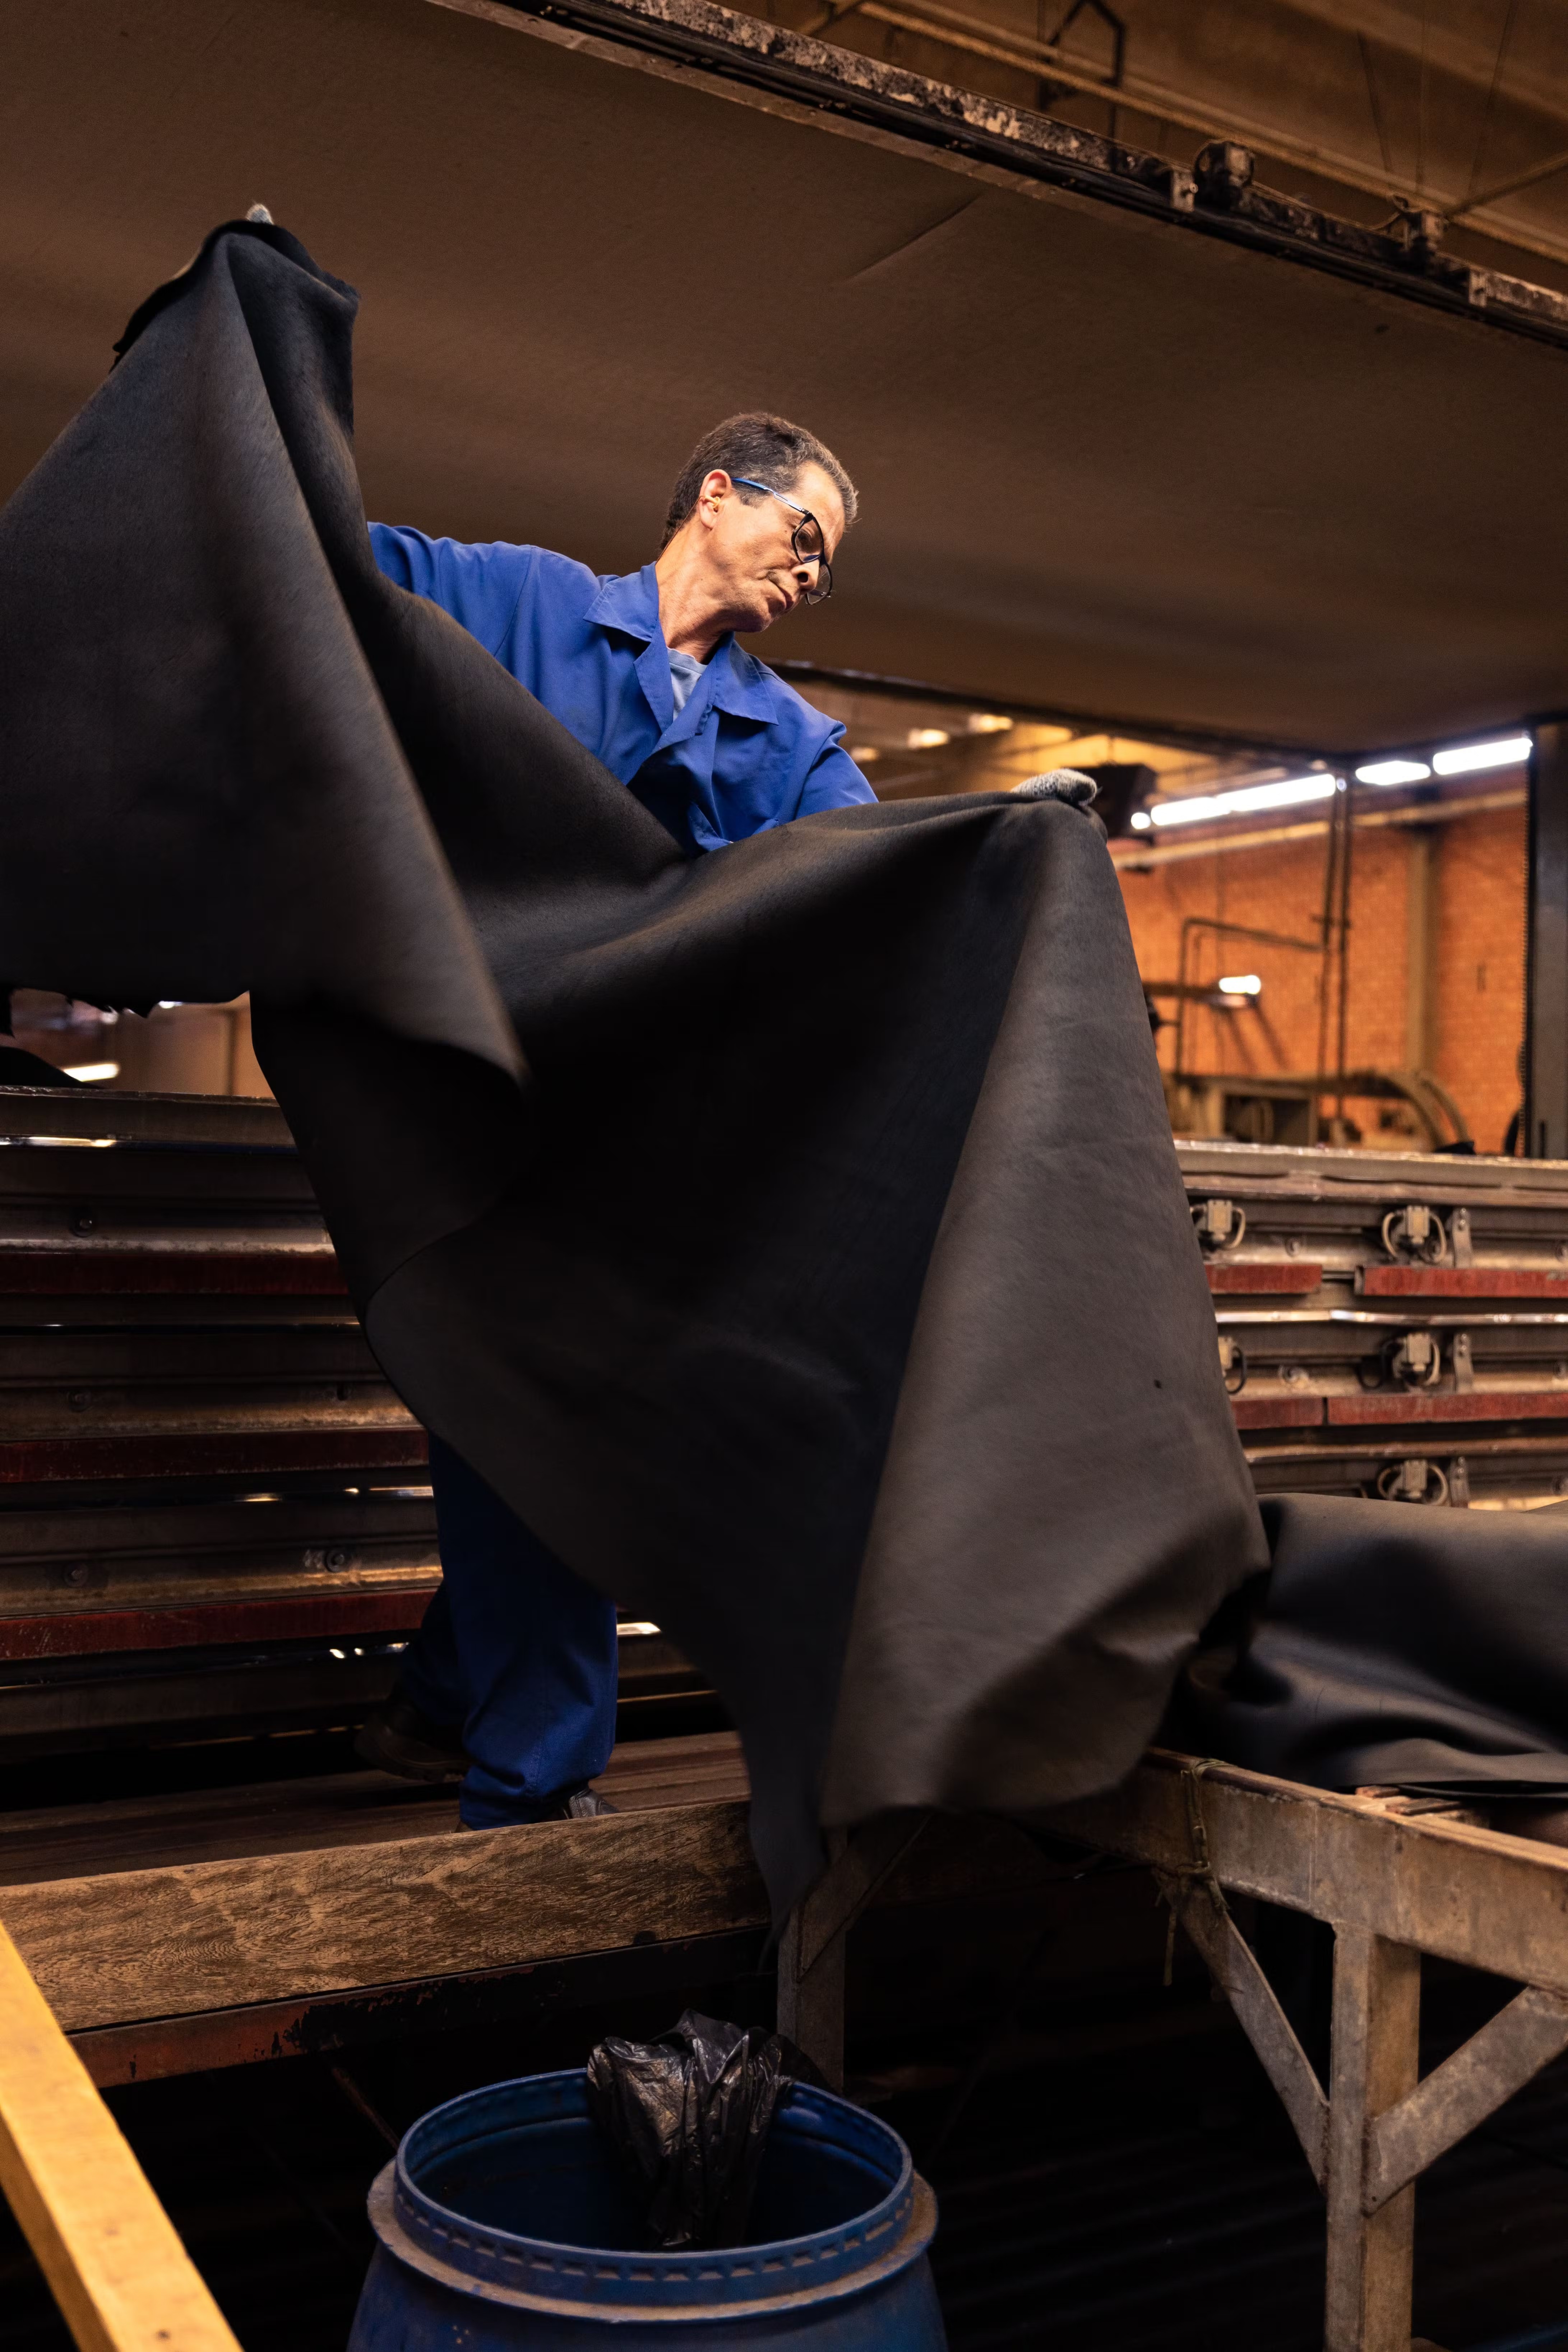 Fábrica de couro no Brasil em 2018